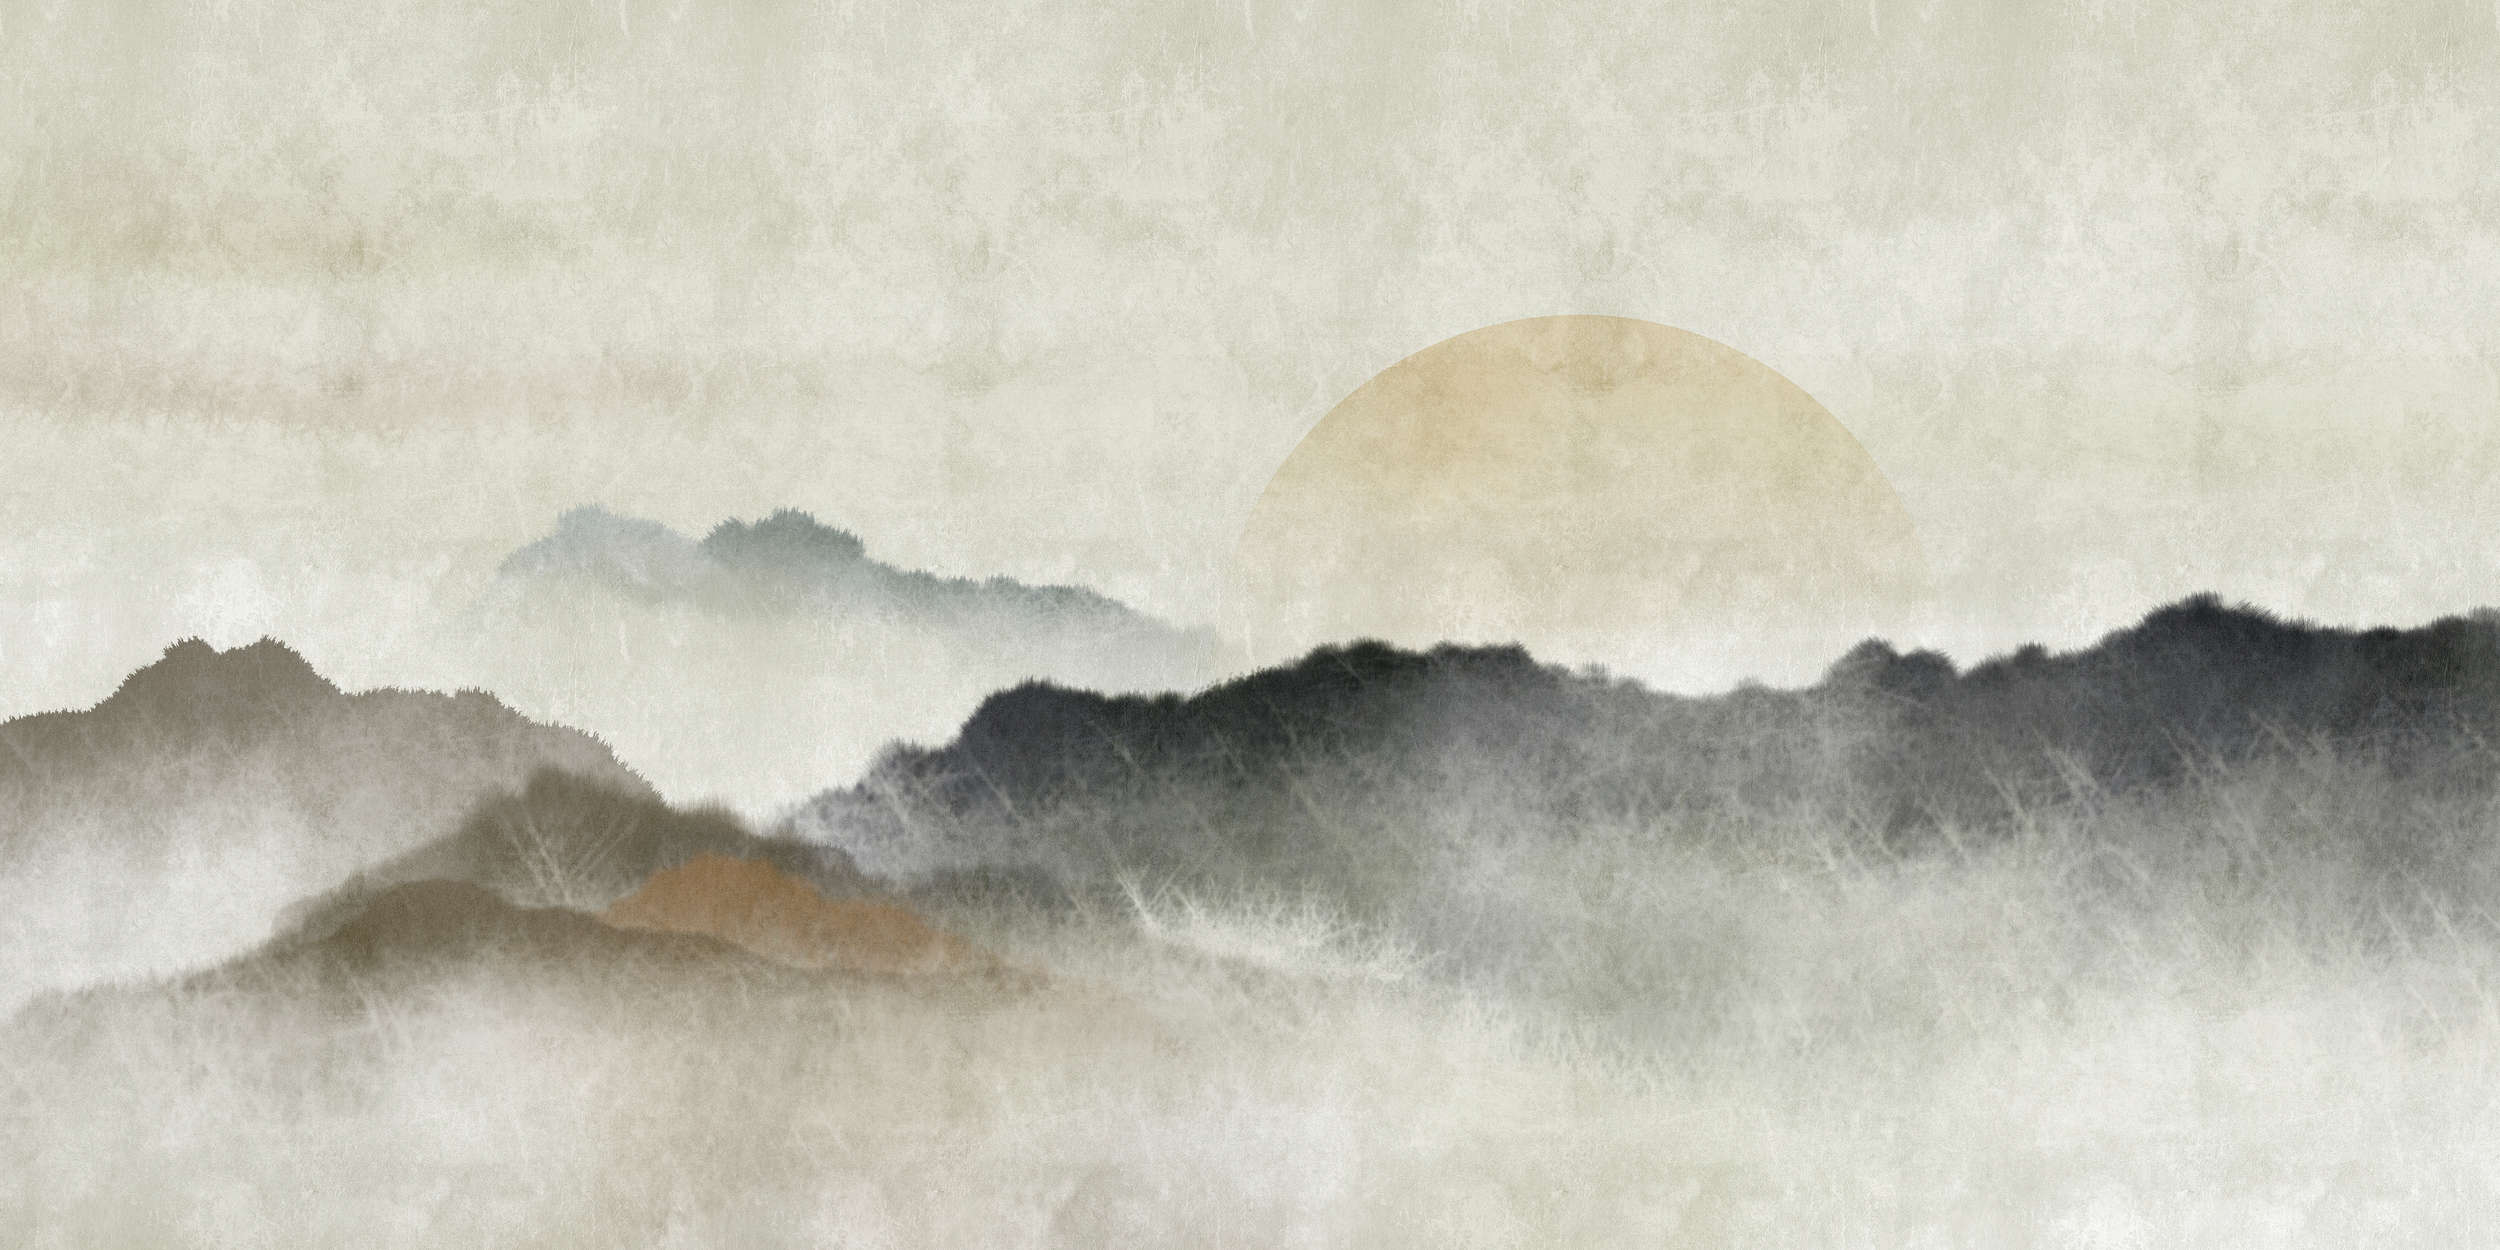             Akaishi 1 - Muurschildering Aziatische print Bergketen bij dageraad
        